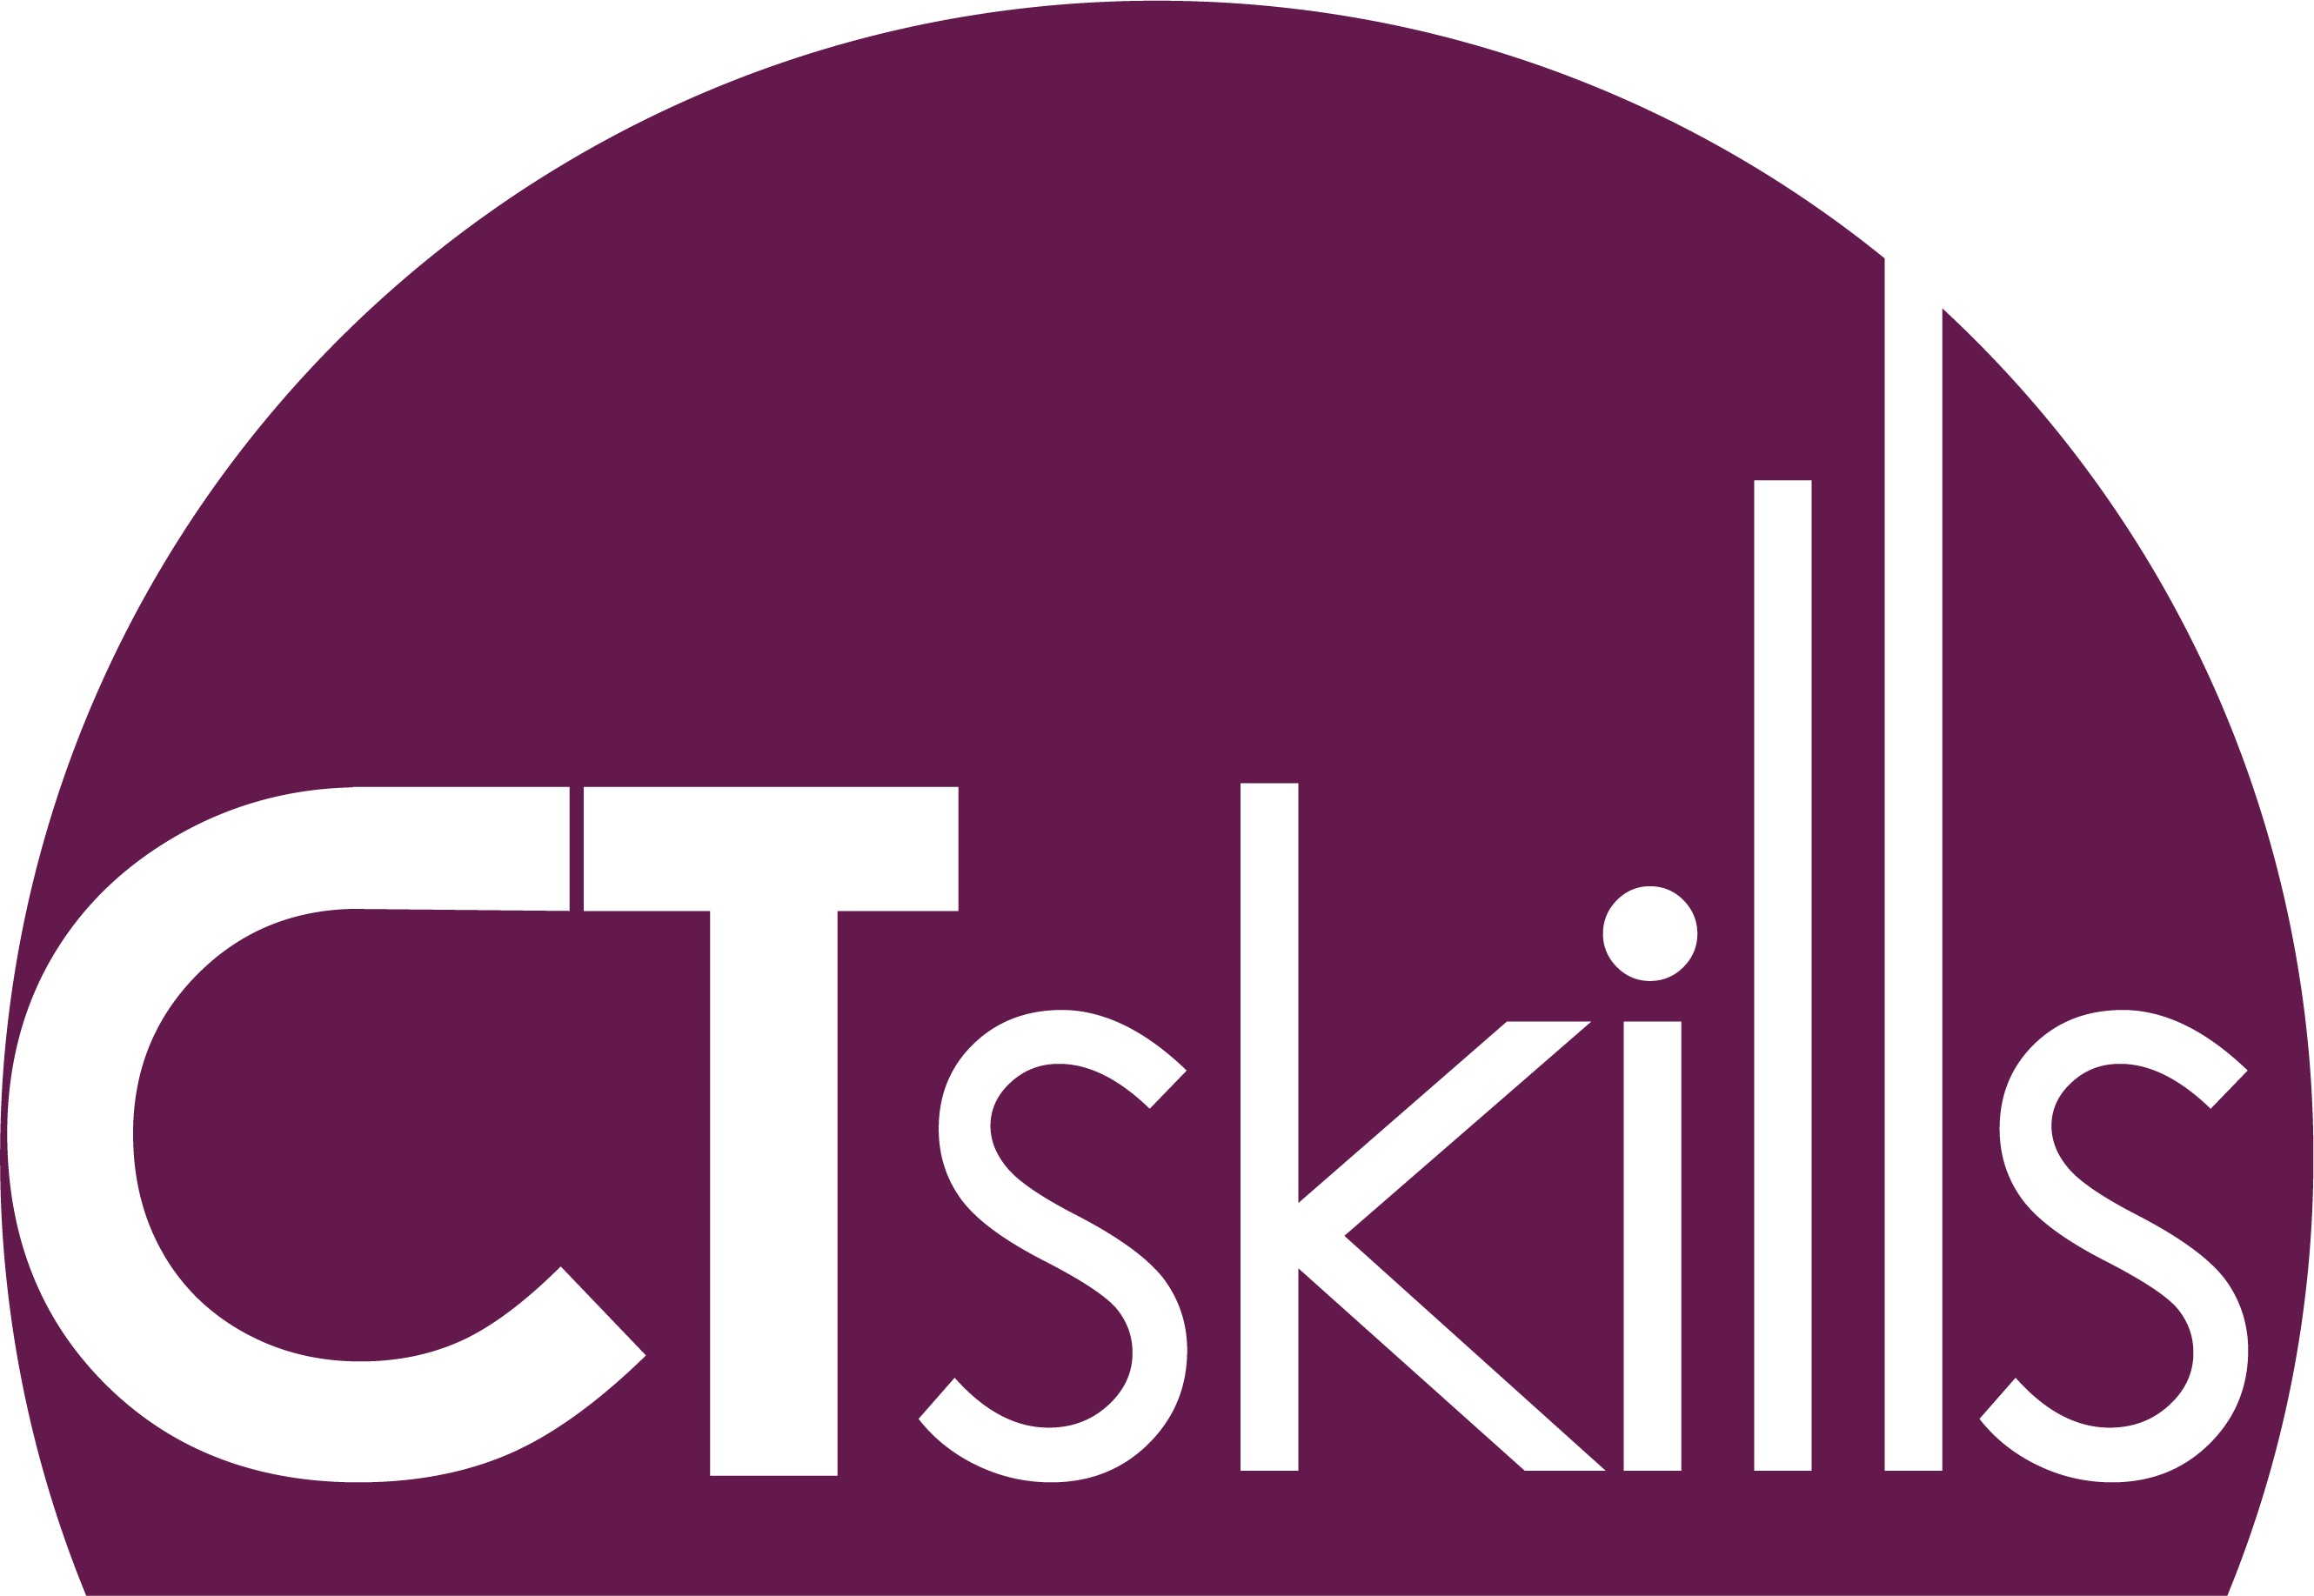 East Midlands Based Training Provider - Ct Skills (2660x1835)